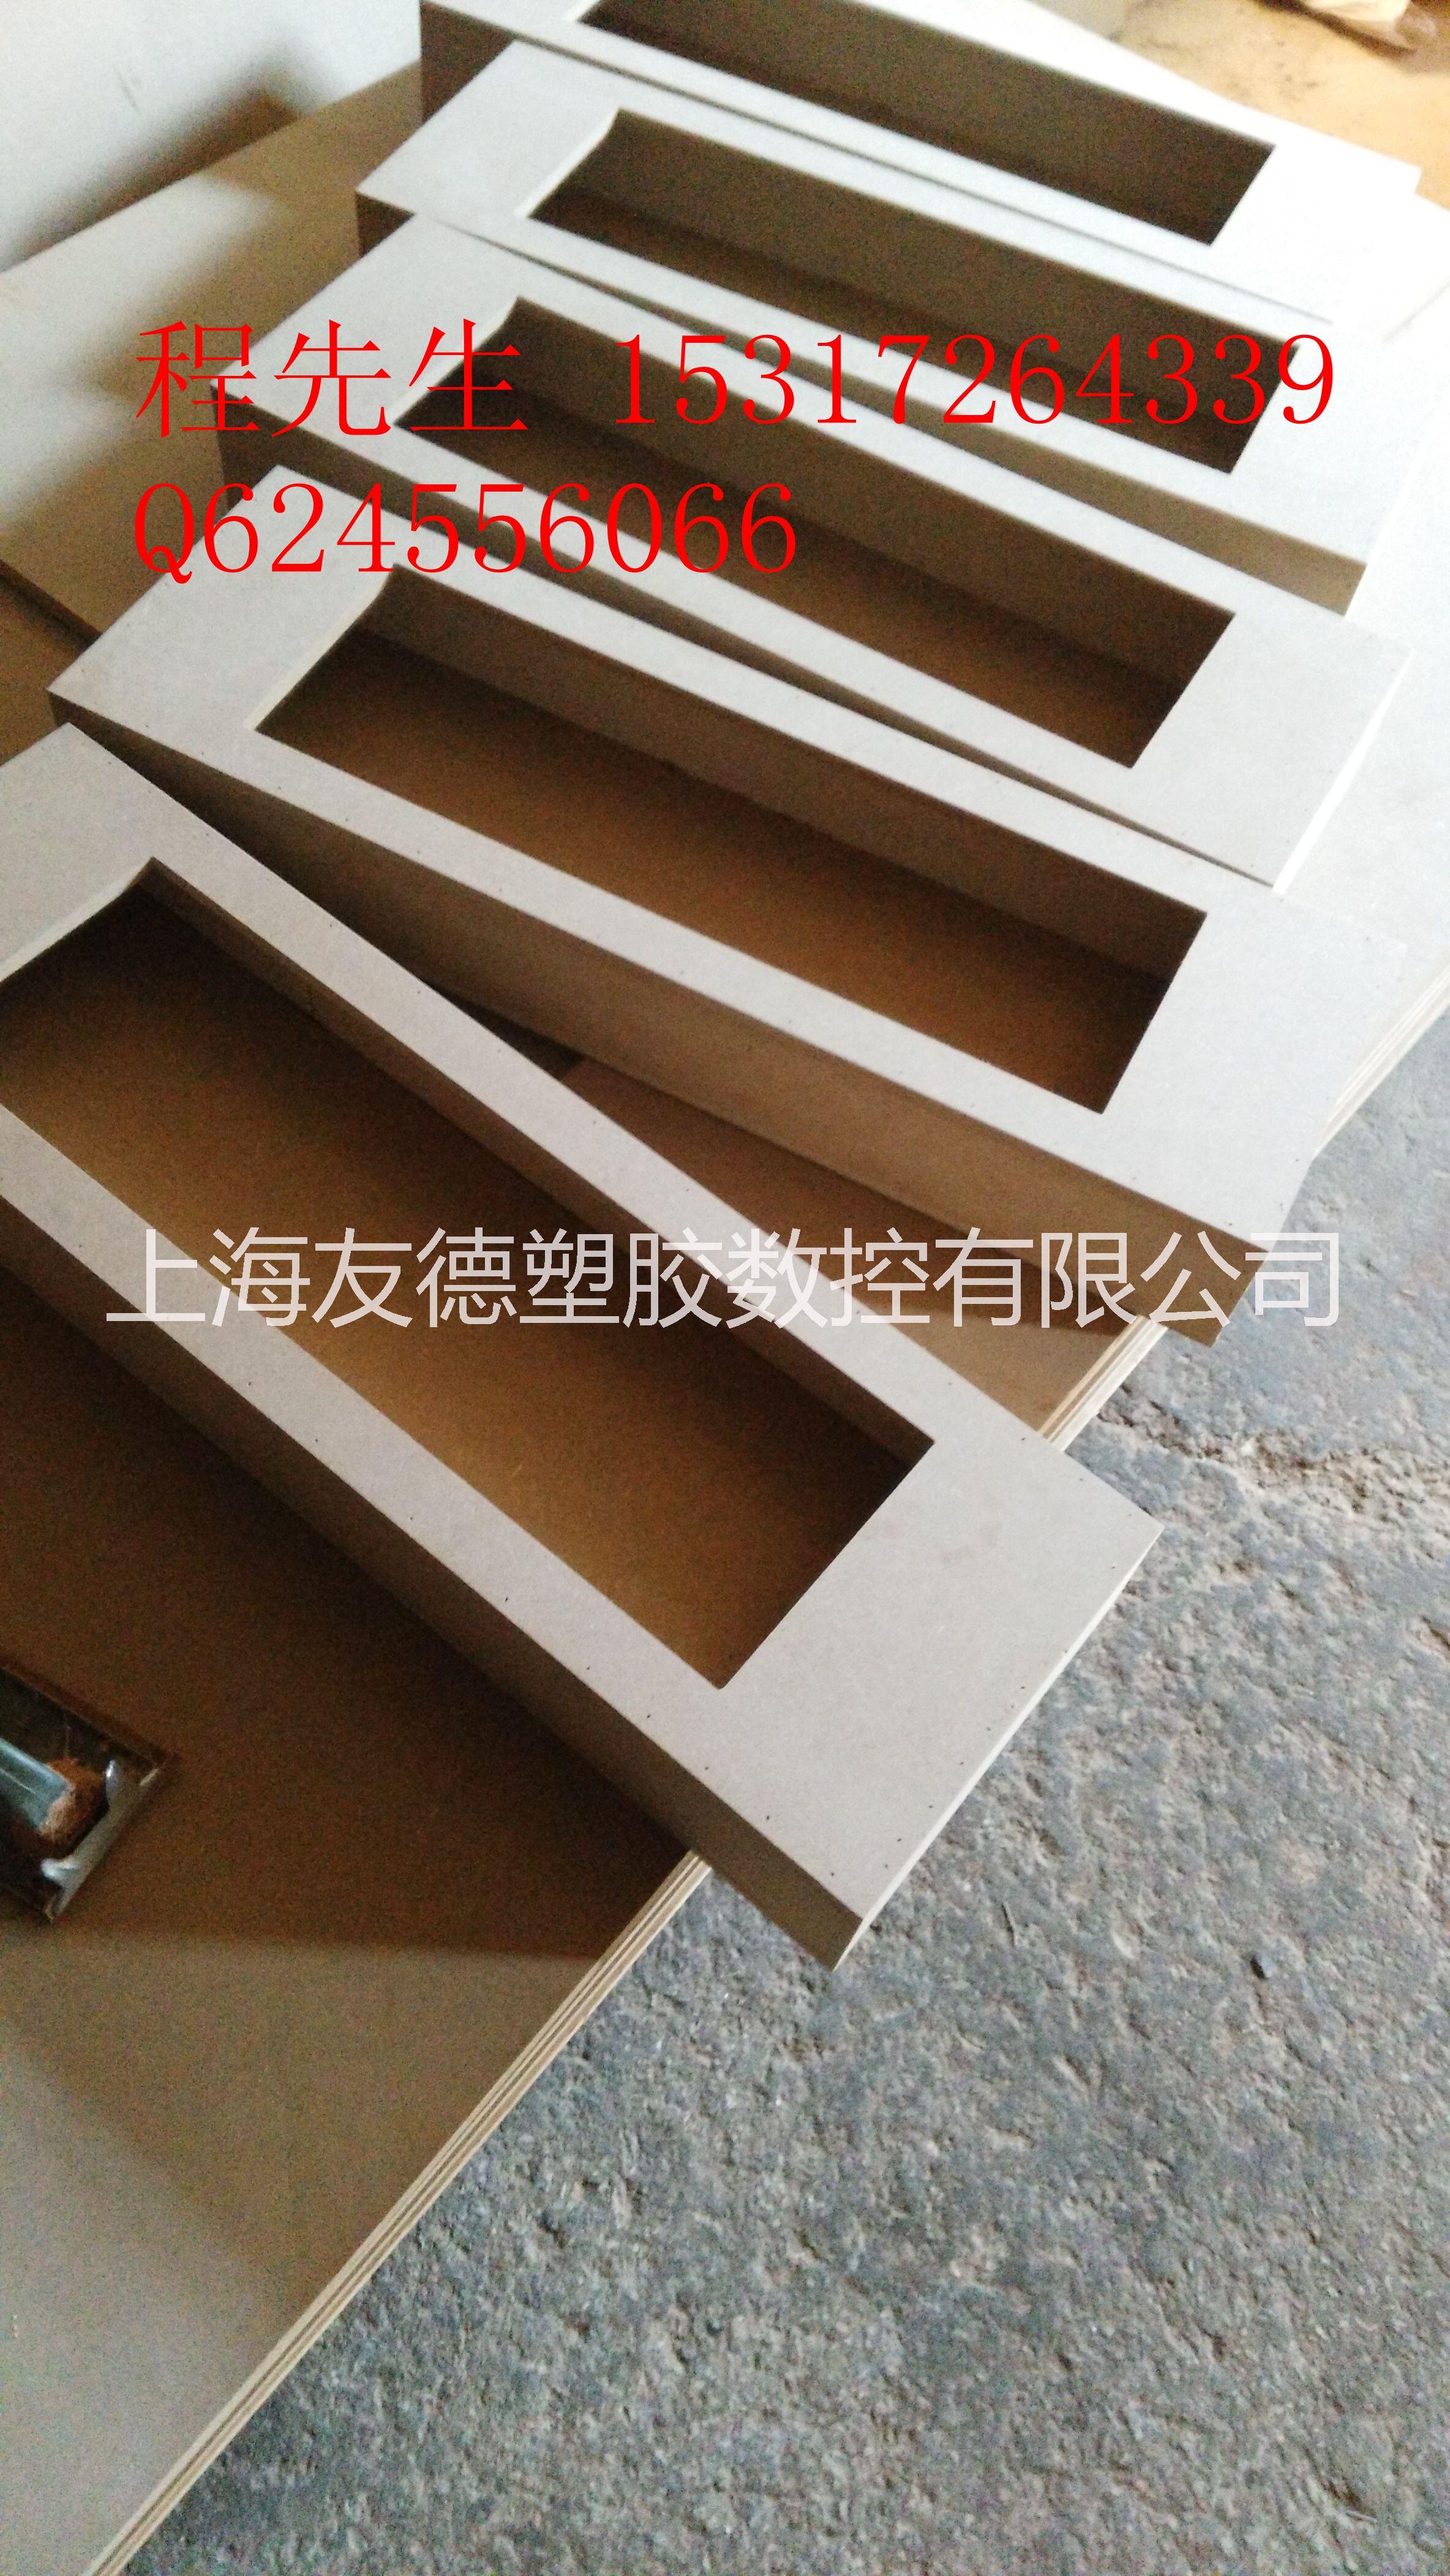 上海木板雕刻加工上海木板雕刻加工@上海多层板雕刻加工@上海密度板雕刻加工